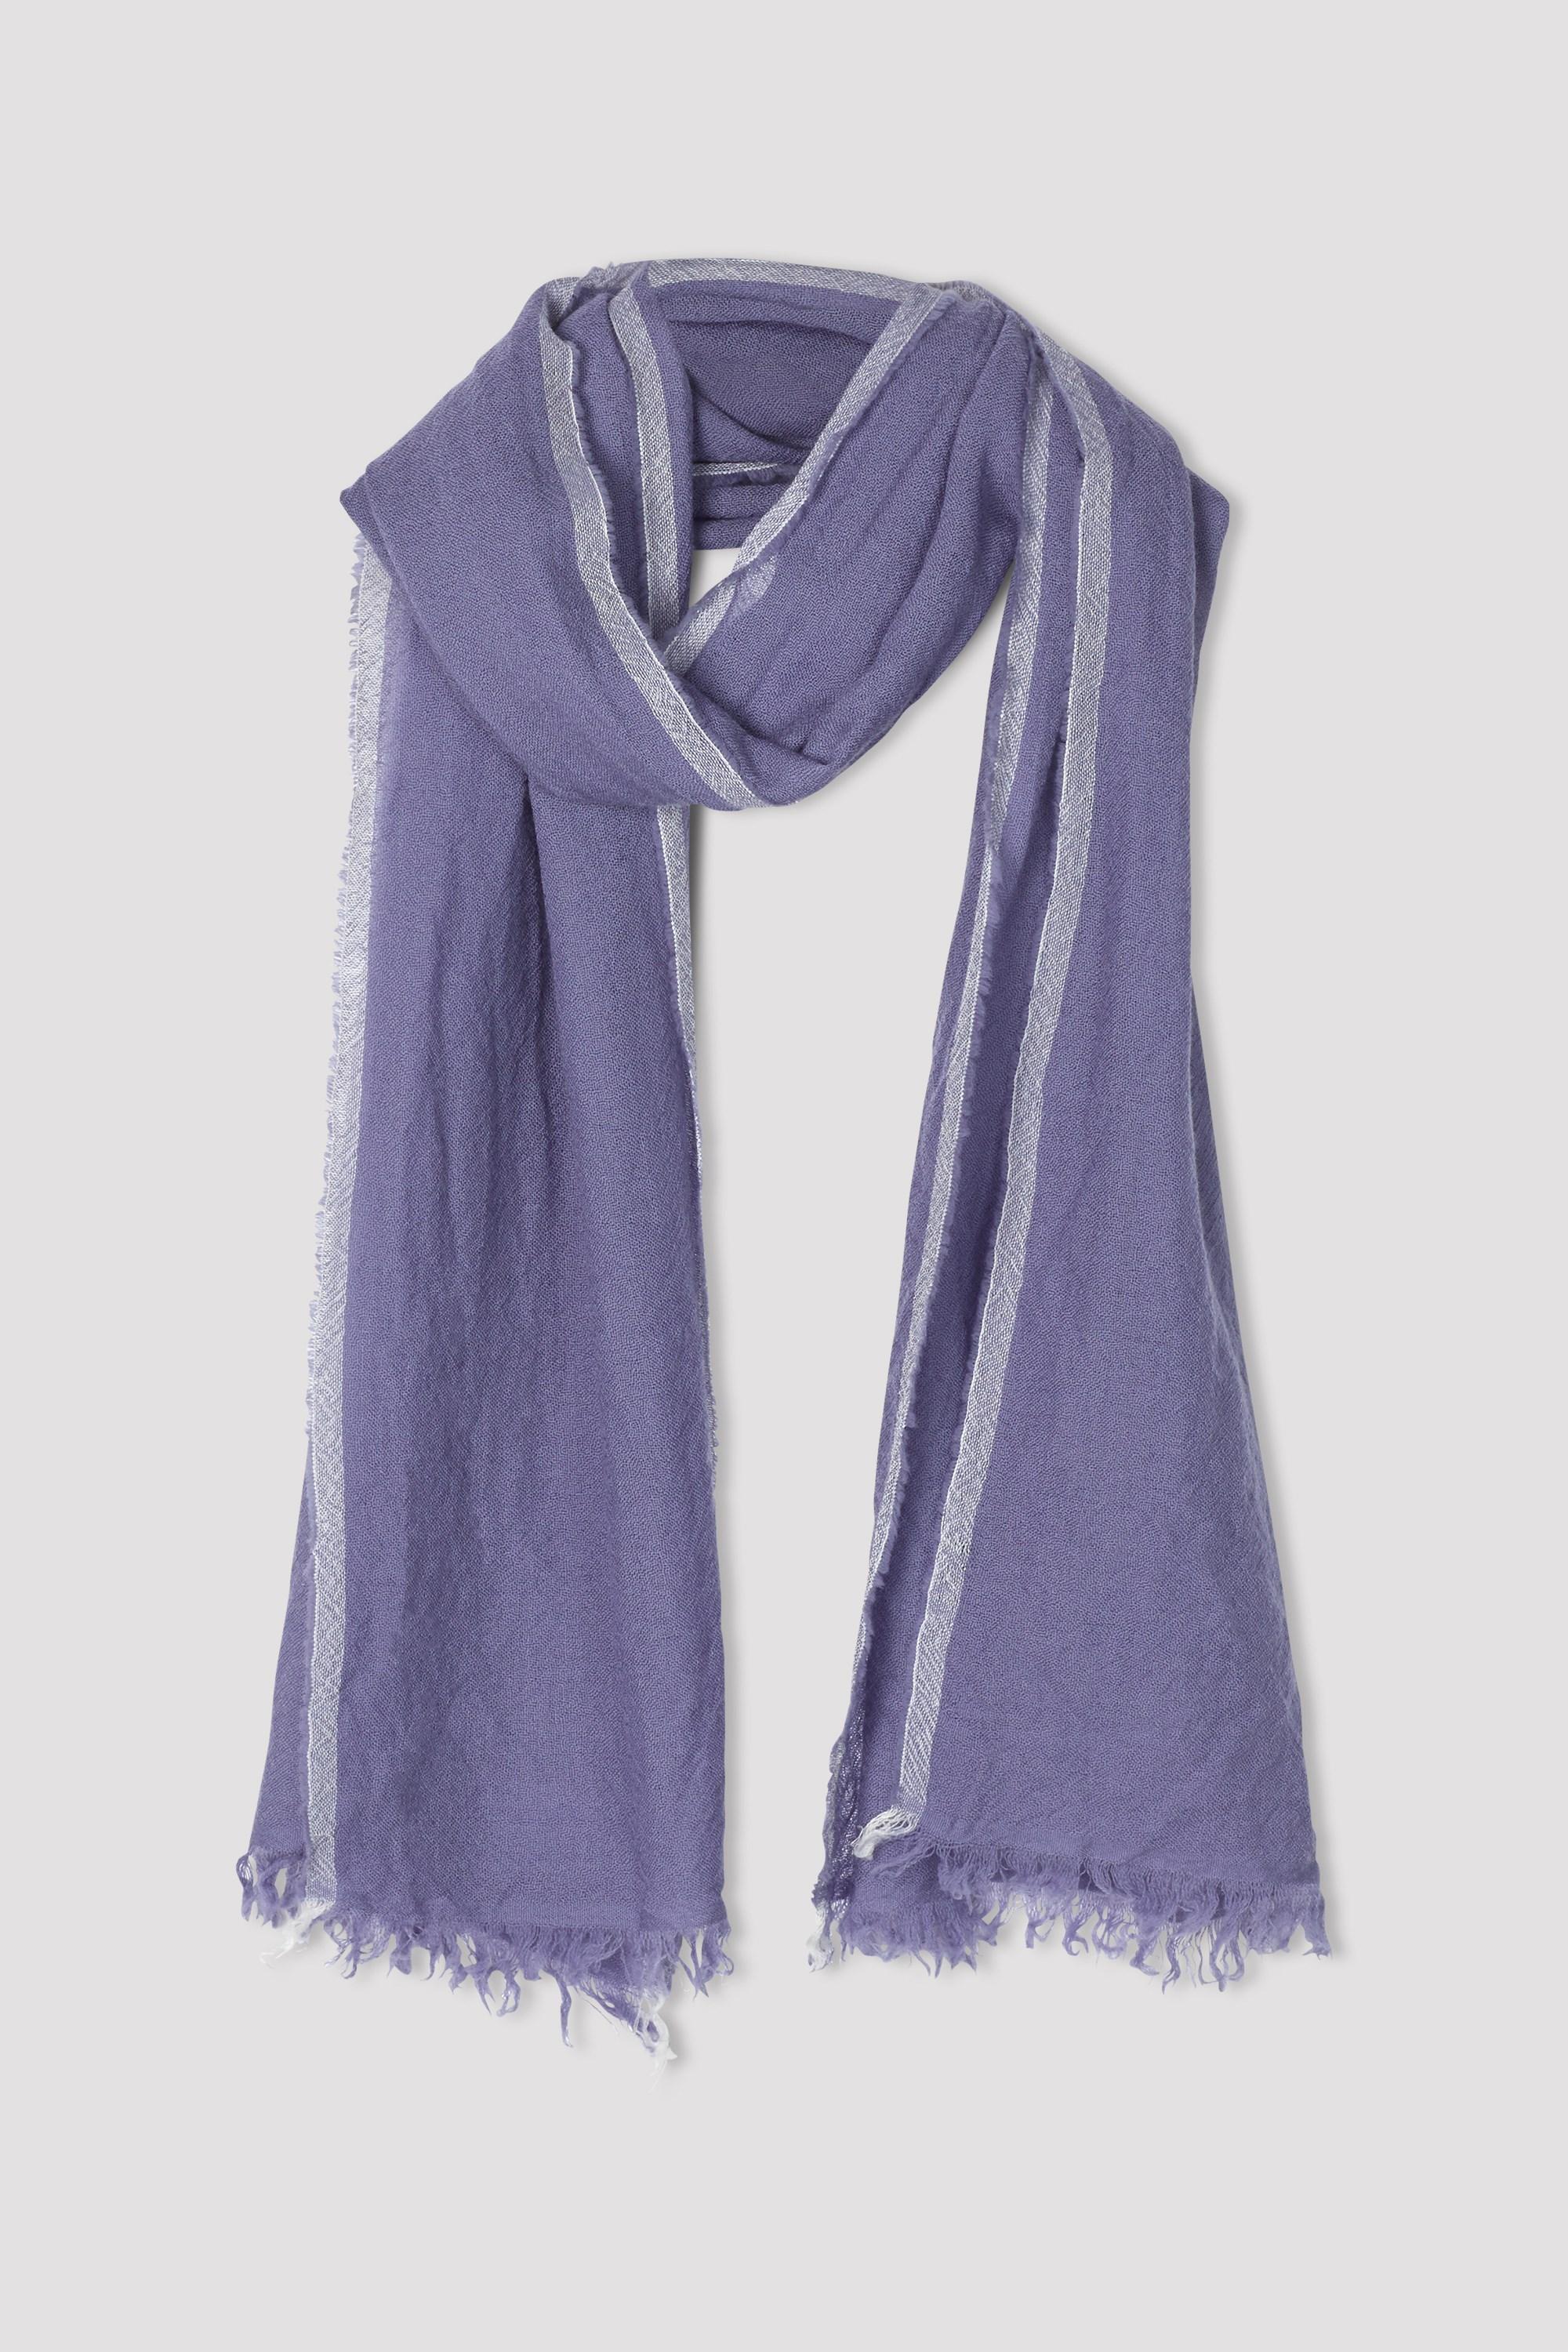 Filippa K Soft Wool Scarf in Blue - Lyst